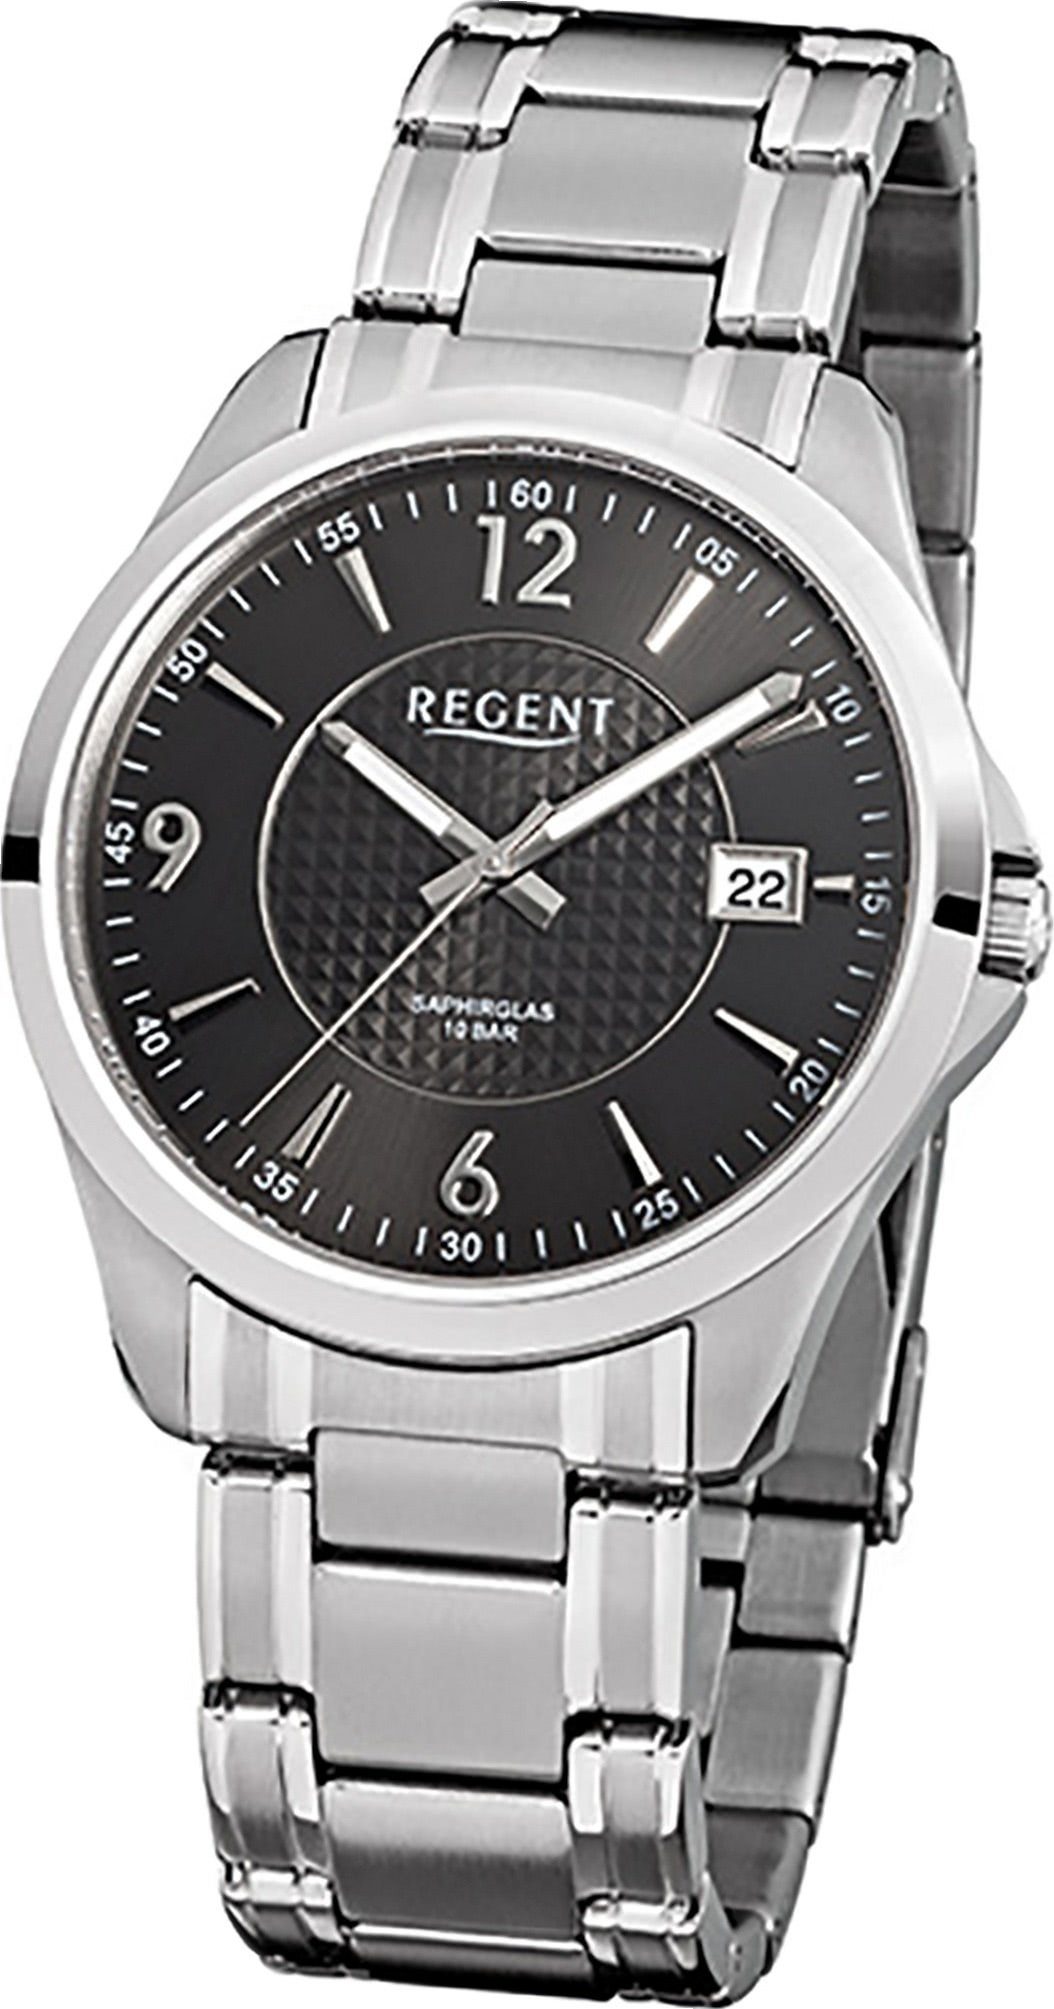 Regent Quarzuhr Regent Stahl Herren Uhr F-527 Quarzuhr, Herrenuhr Edelstahlarmband silber, rundes Gehäuse, groß (ca. 40mm)